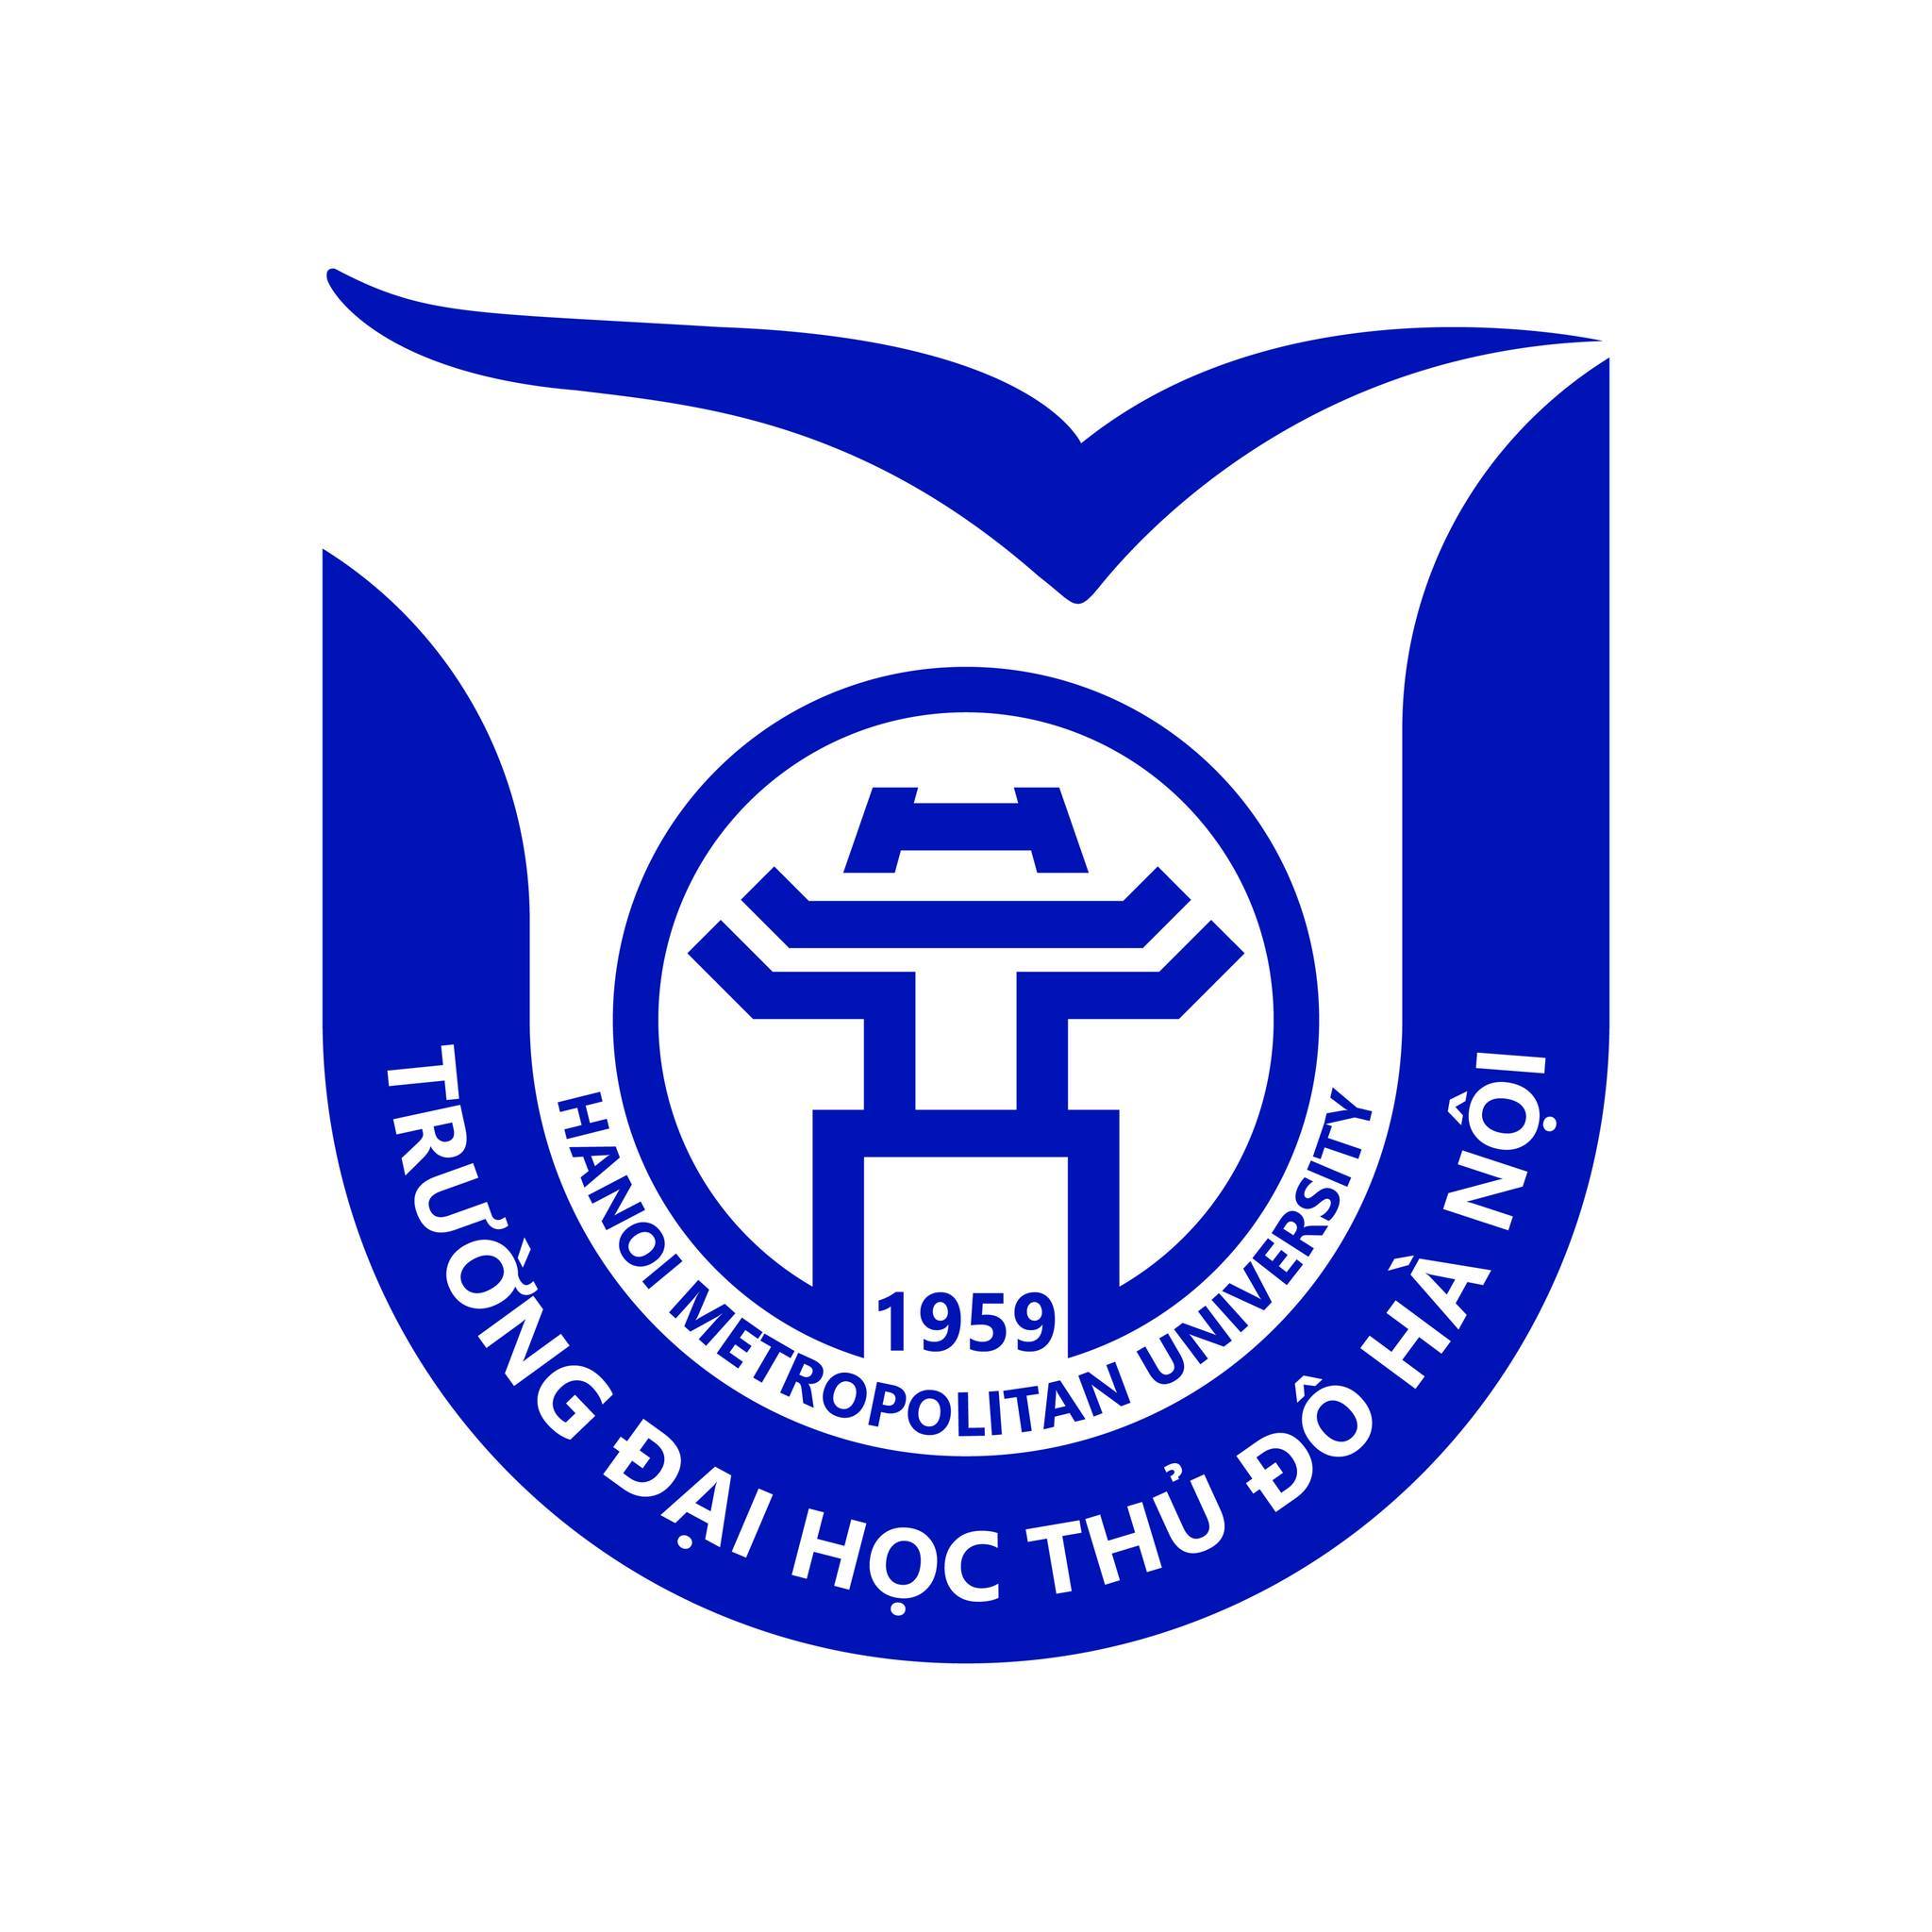 Thông báo tuyển sinh và đào tạo cùng lúc hai chương trình trình độ đại học hệ chính quy tại Trường Đại học Thủ đô Hà Nội